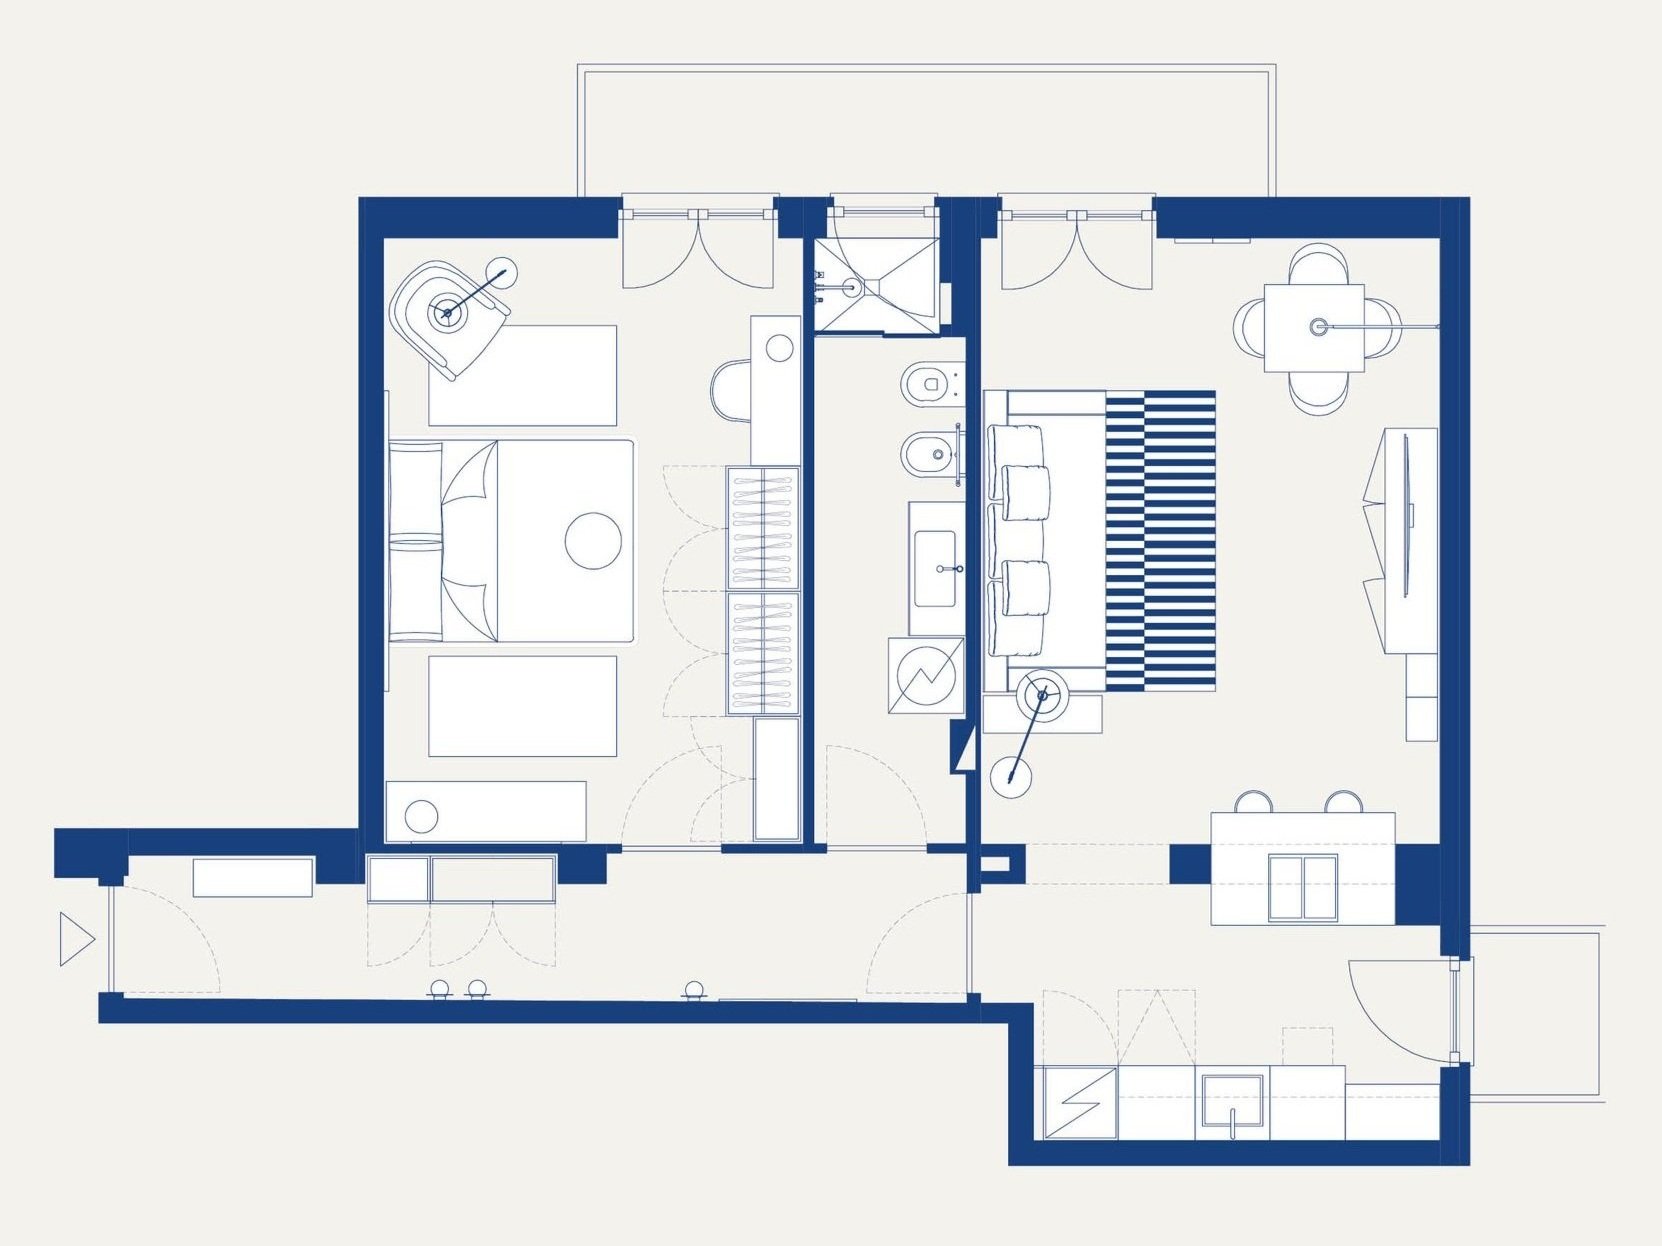 住宅設計,公寓設計,小戶型設計,50㎡公寓設計,公寓設計案例,公寓設計方案,Be.Arch Hub,米蘭,橄欖色